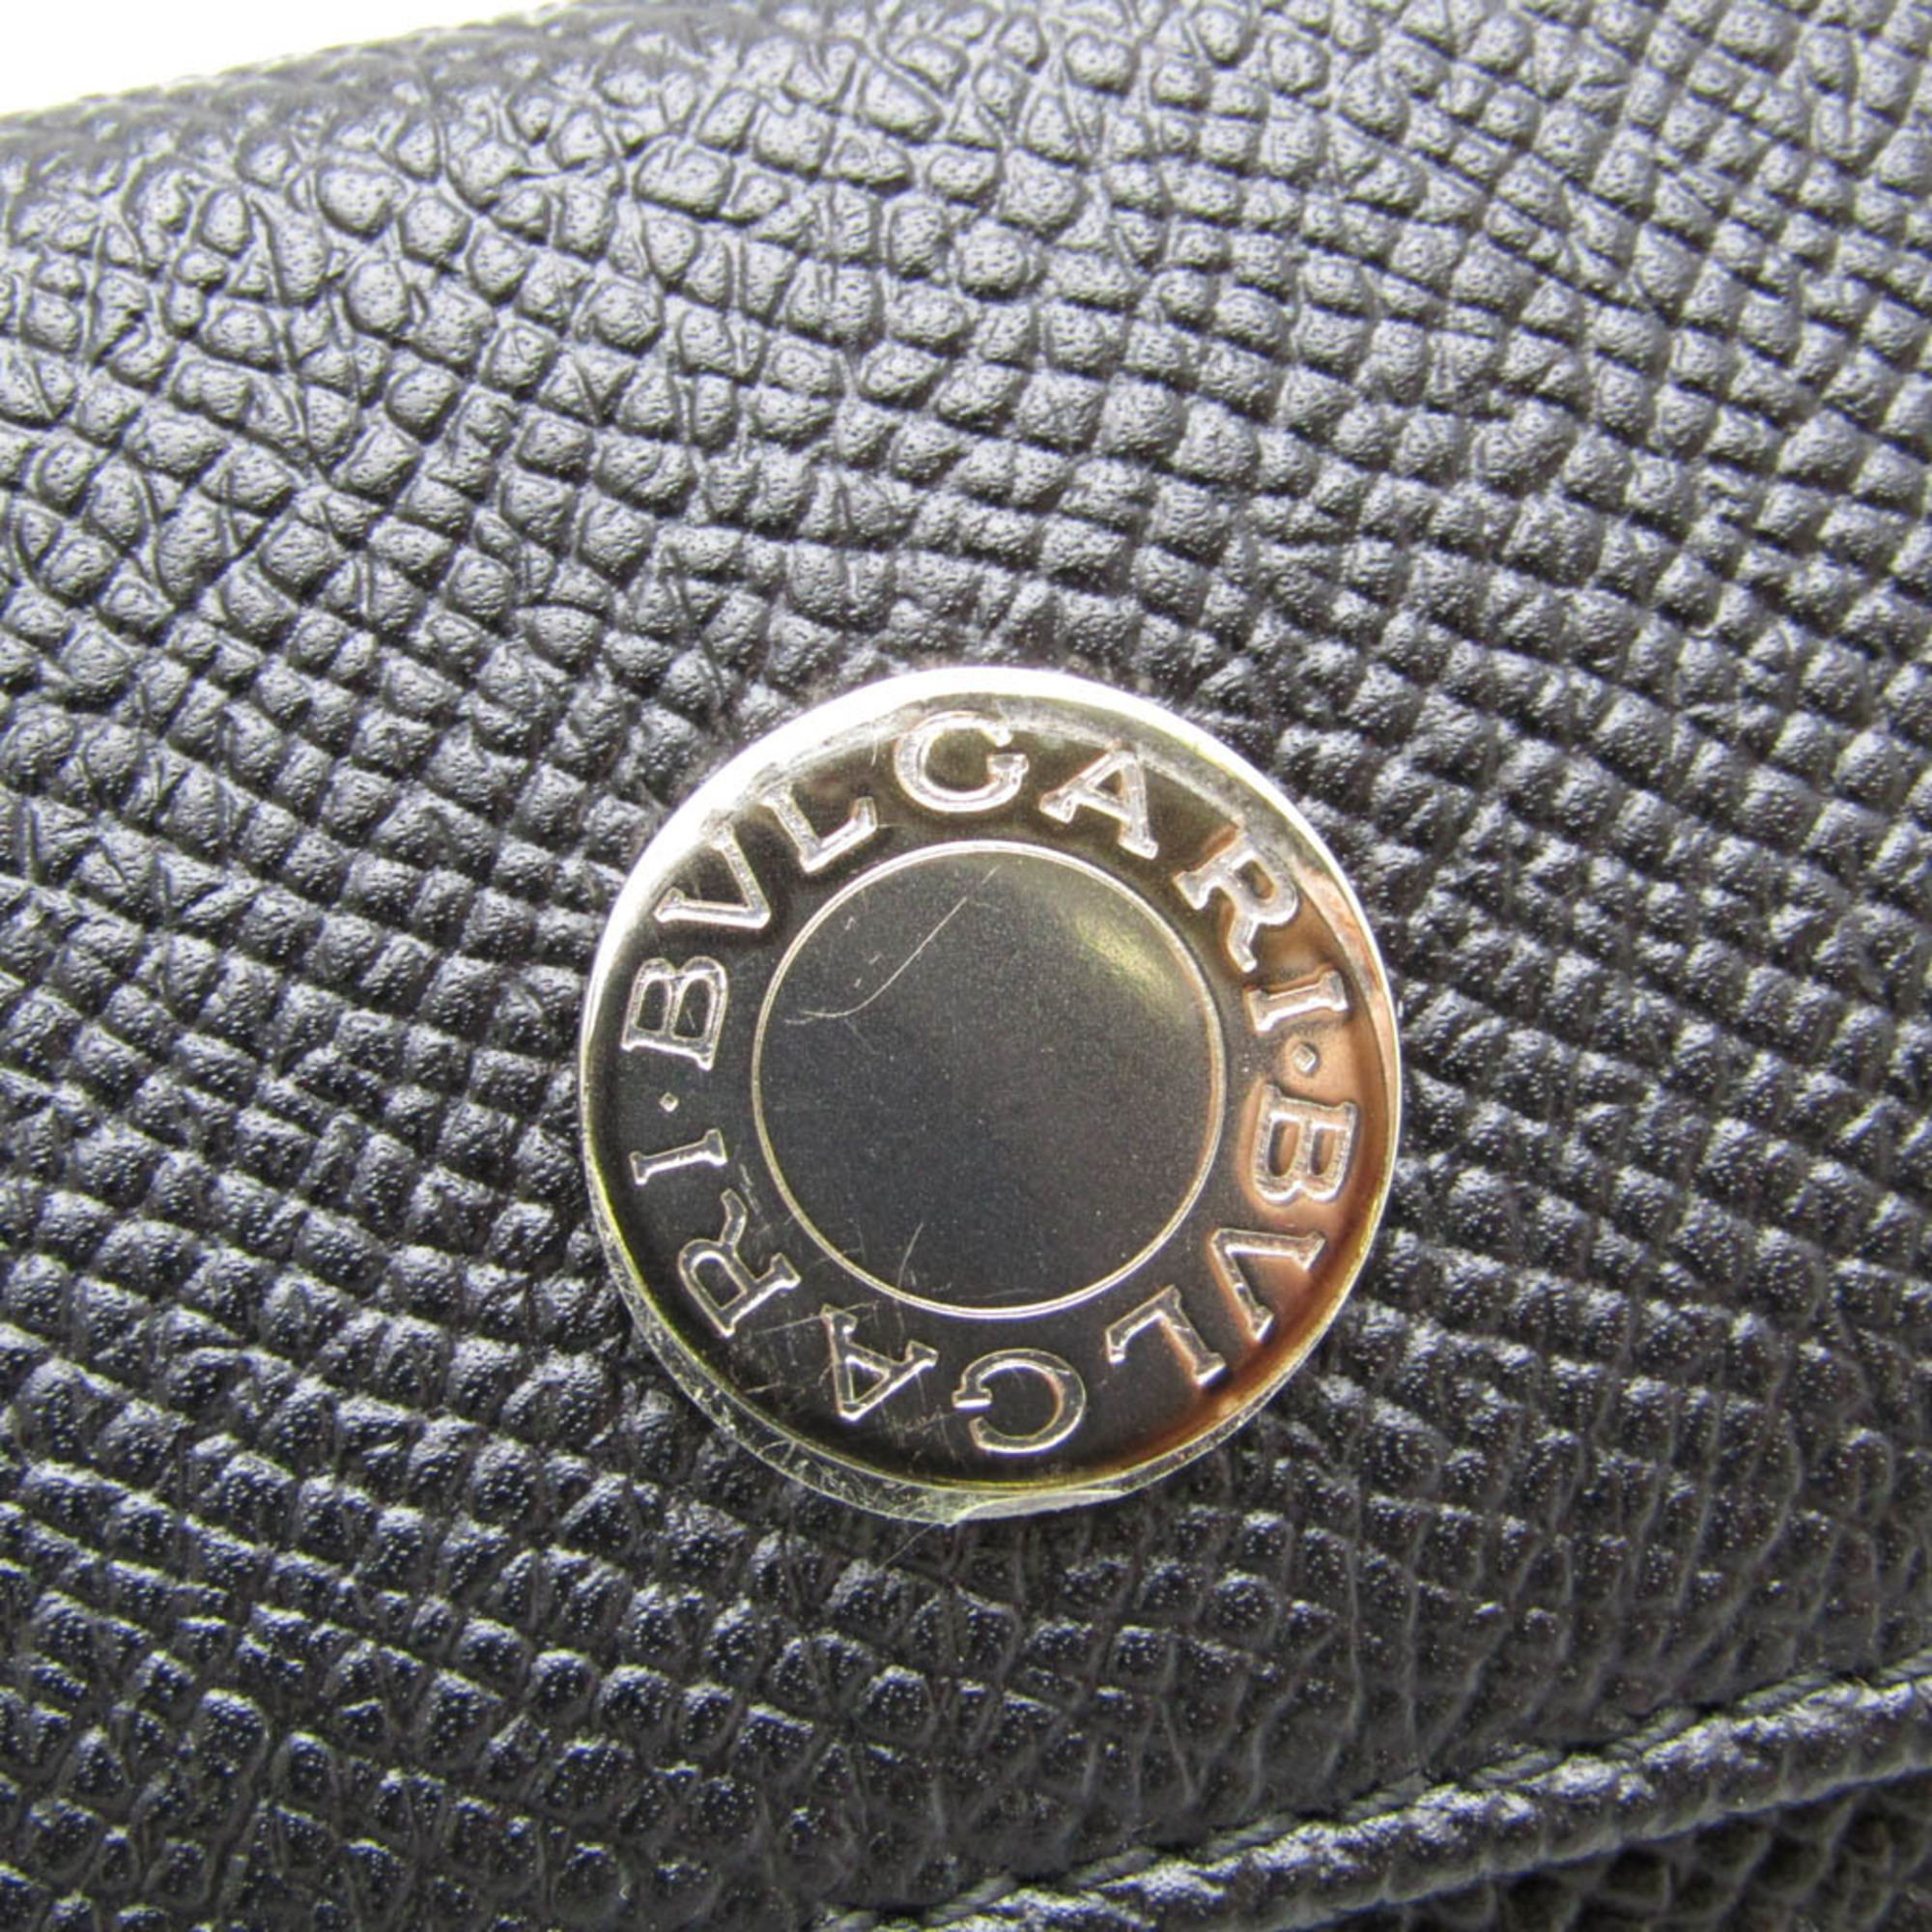 Bvlgari Logo Button Women,Men Leather Key Case Black